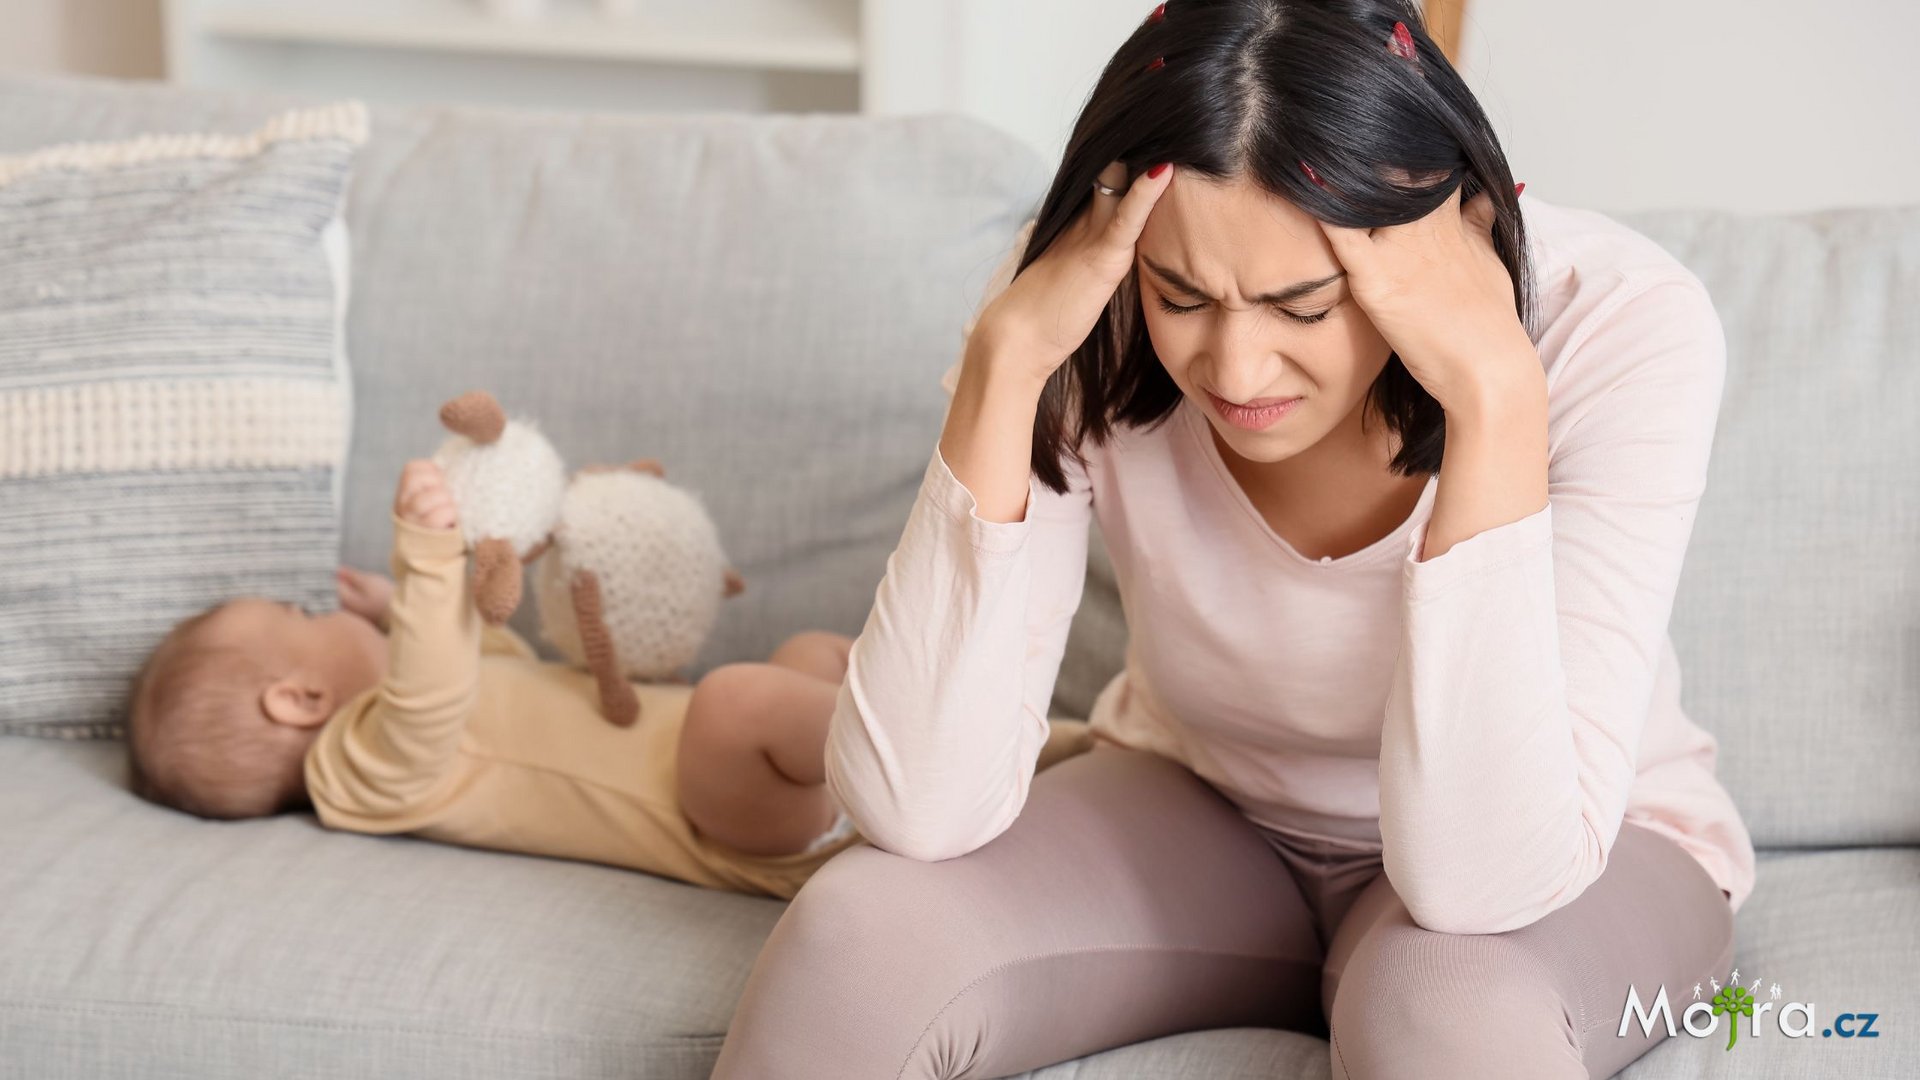 POPORODNÍ DEPRESE: Když je mateřství plné smutku